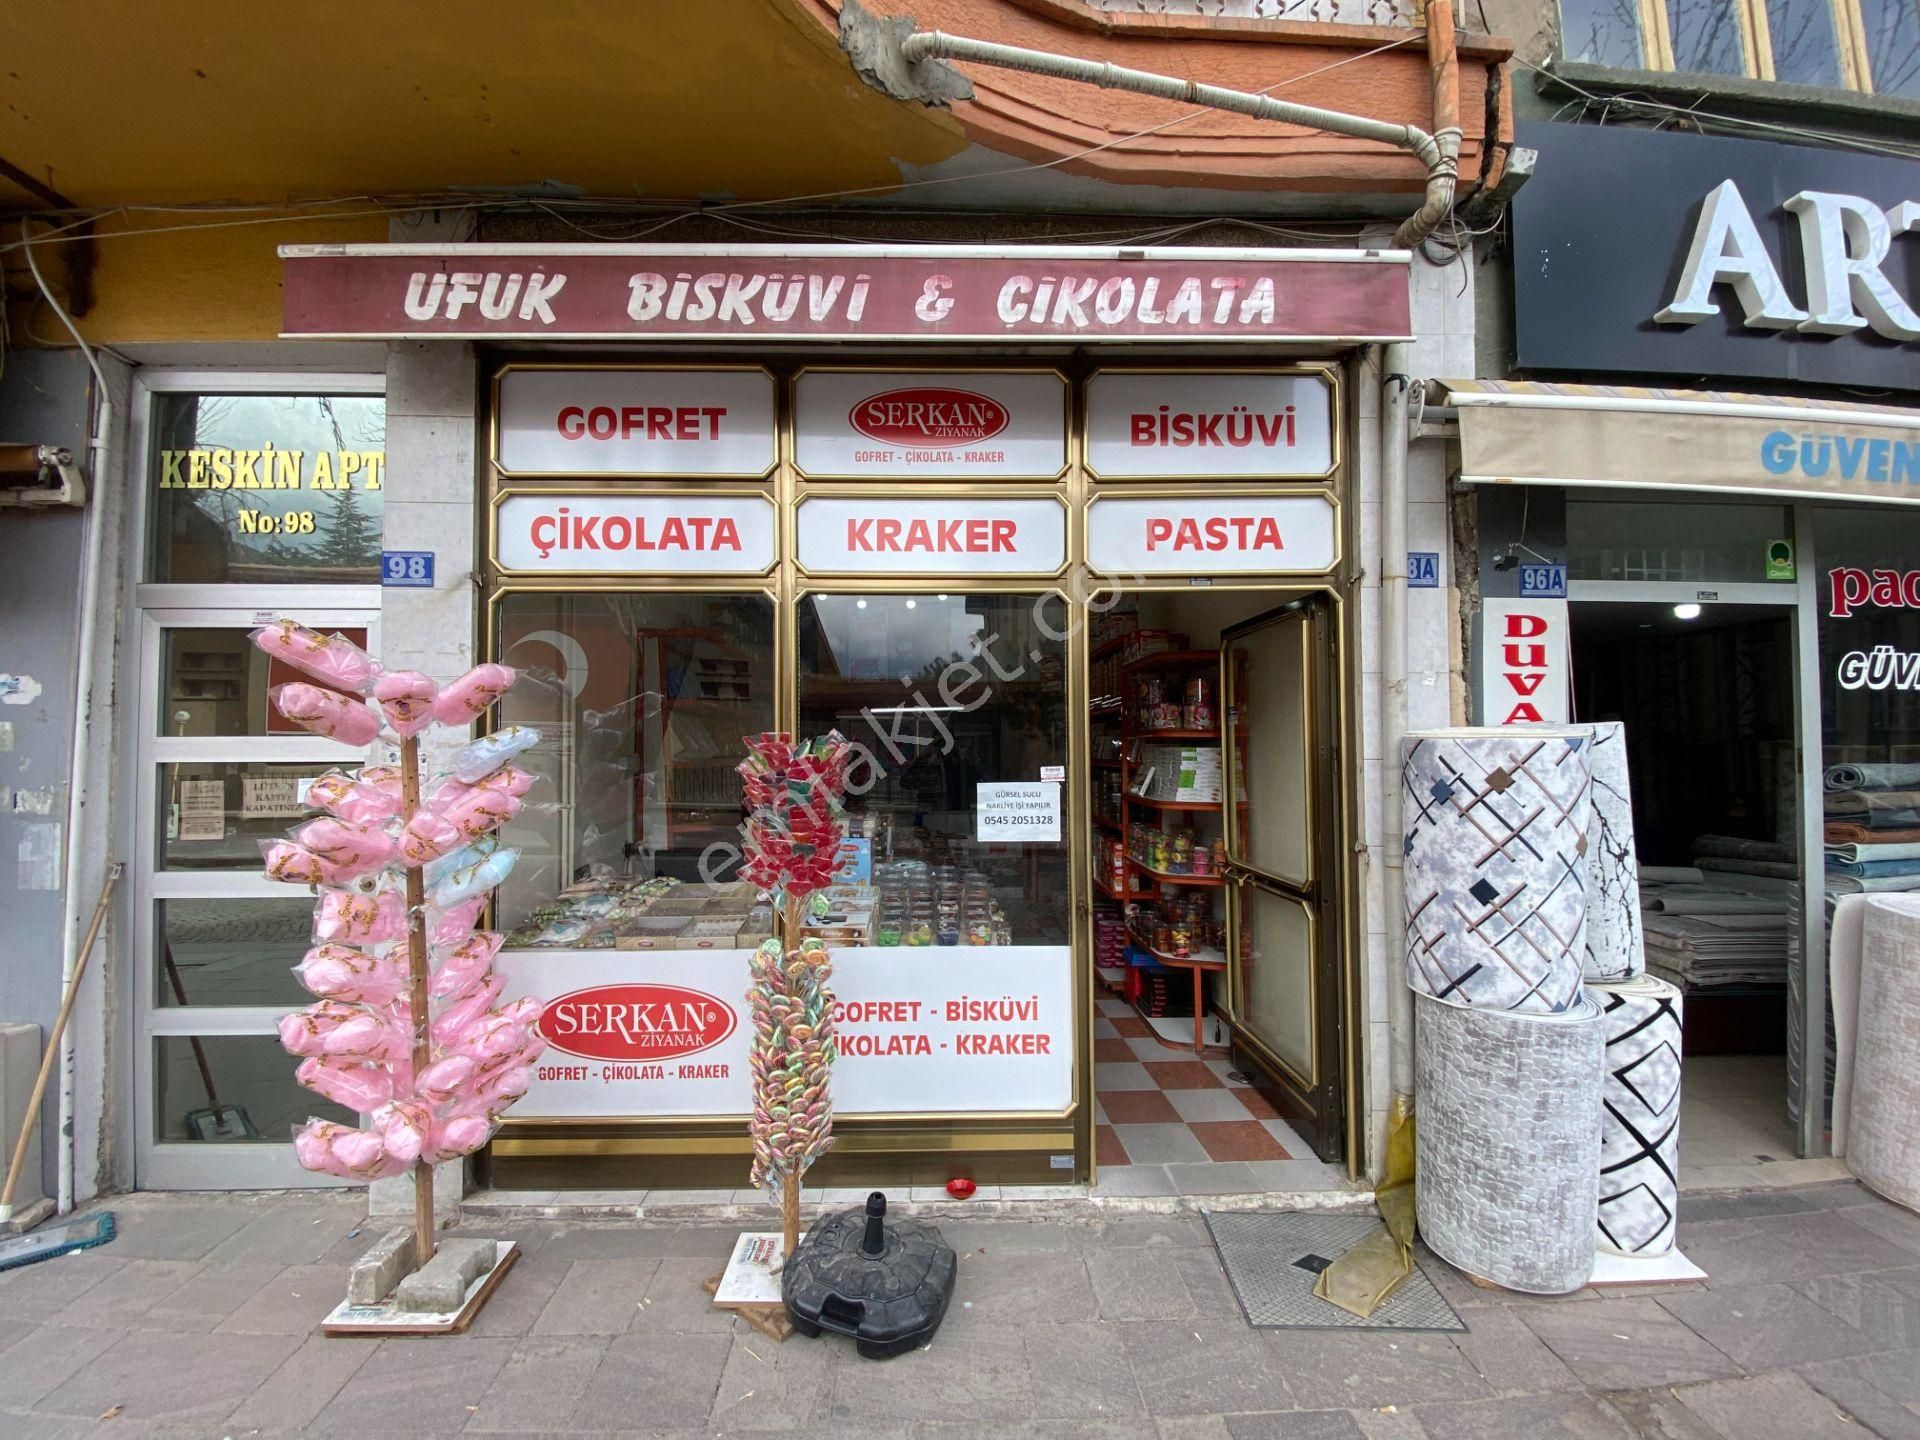 Akşehir Meydan Satılık Dükkan & Mağaza  A-K EMLAKTAN ÇARŞI MERKEZDE SANAT OKULU KARŞISI YATIRIMLIK İŞ YERİ VE DAİRE